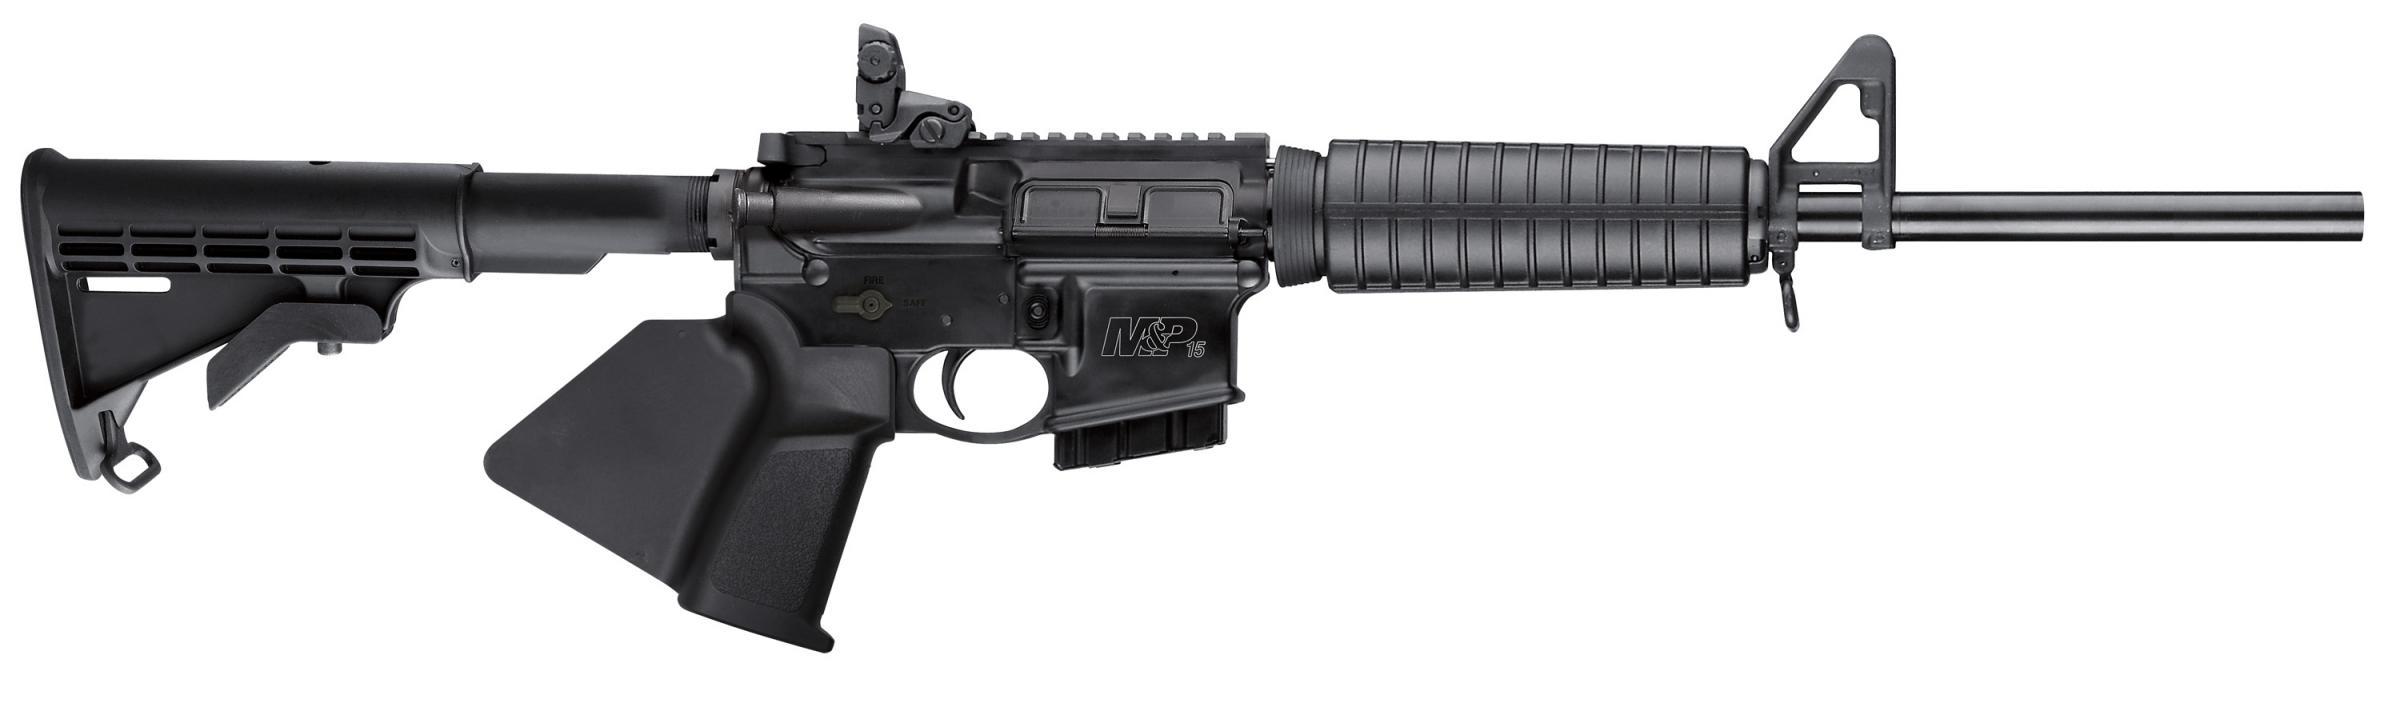 S&W M&P15 SPORT II 5.56 RIFLE 10-SHOT BLACK,,